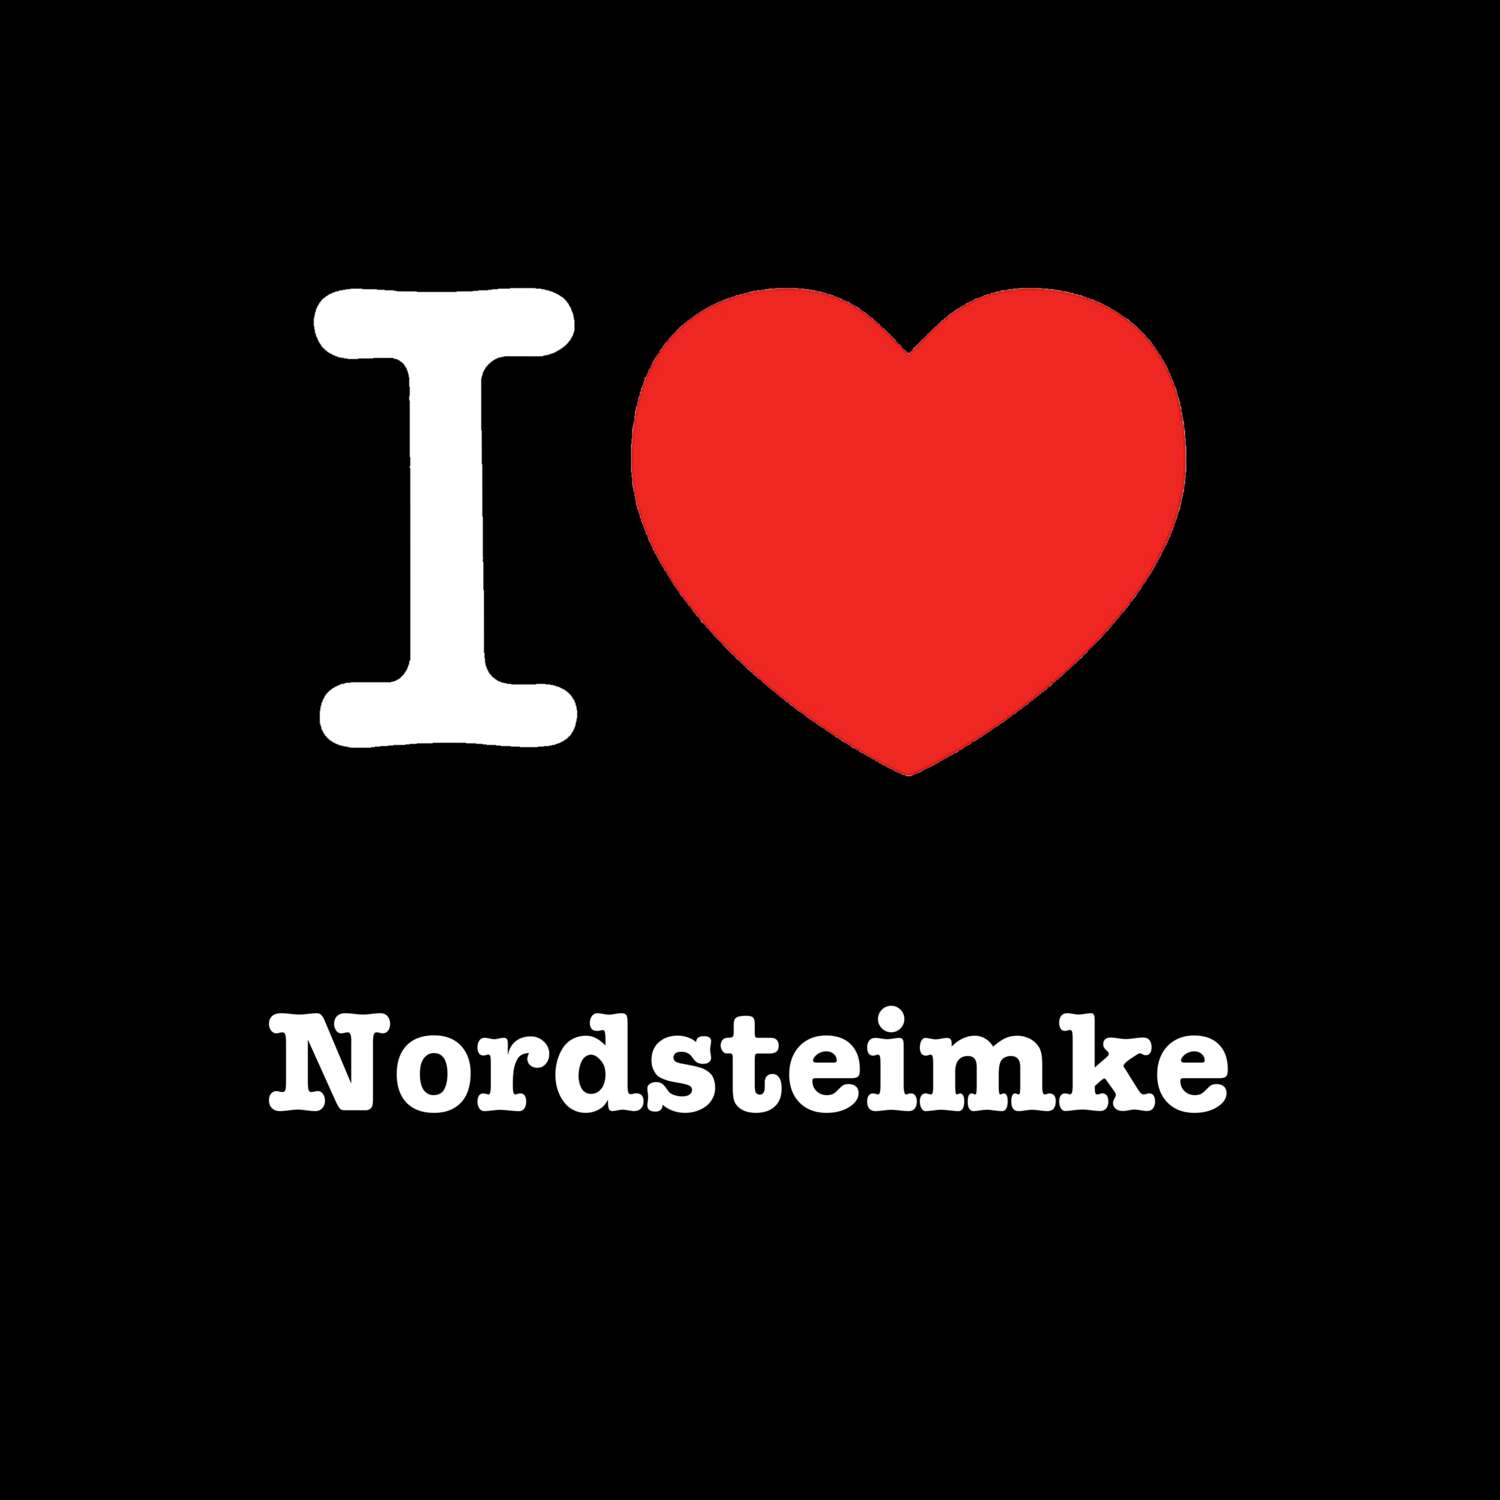 Nordsteimke T-Shirt »I love«